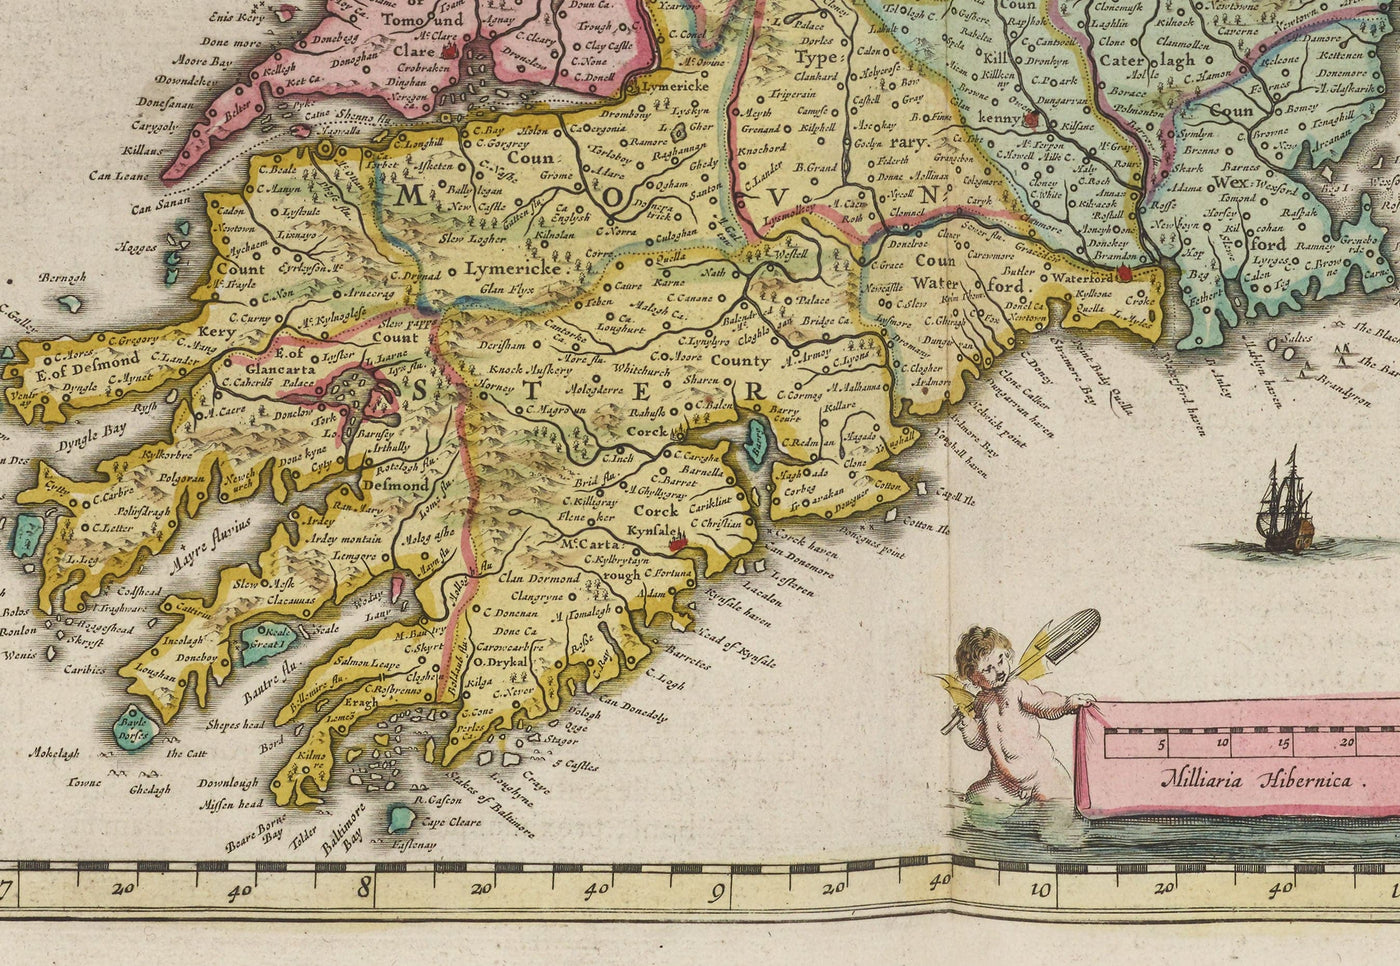 Alte Karte von Irland, Hibernia 1654 von Joan Blaeu aus dem Theatrum Orbis Terrarum Sivar Atlas Novus - Britische Inseln